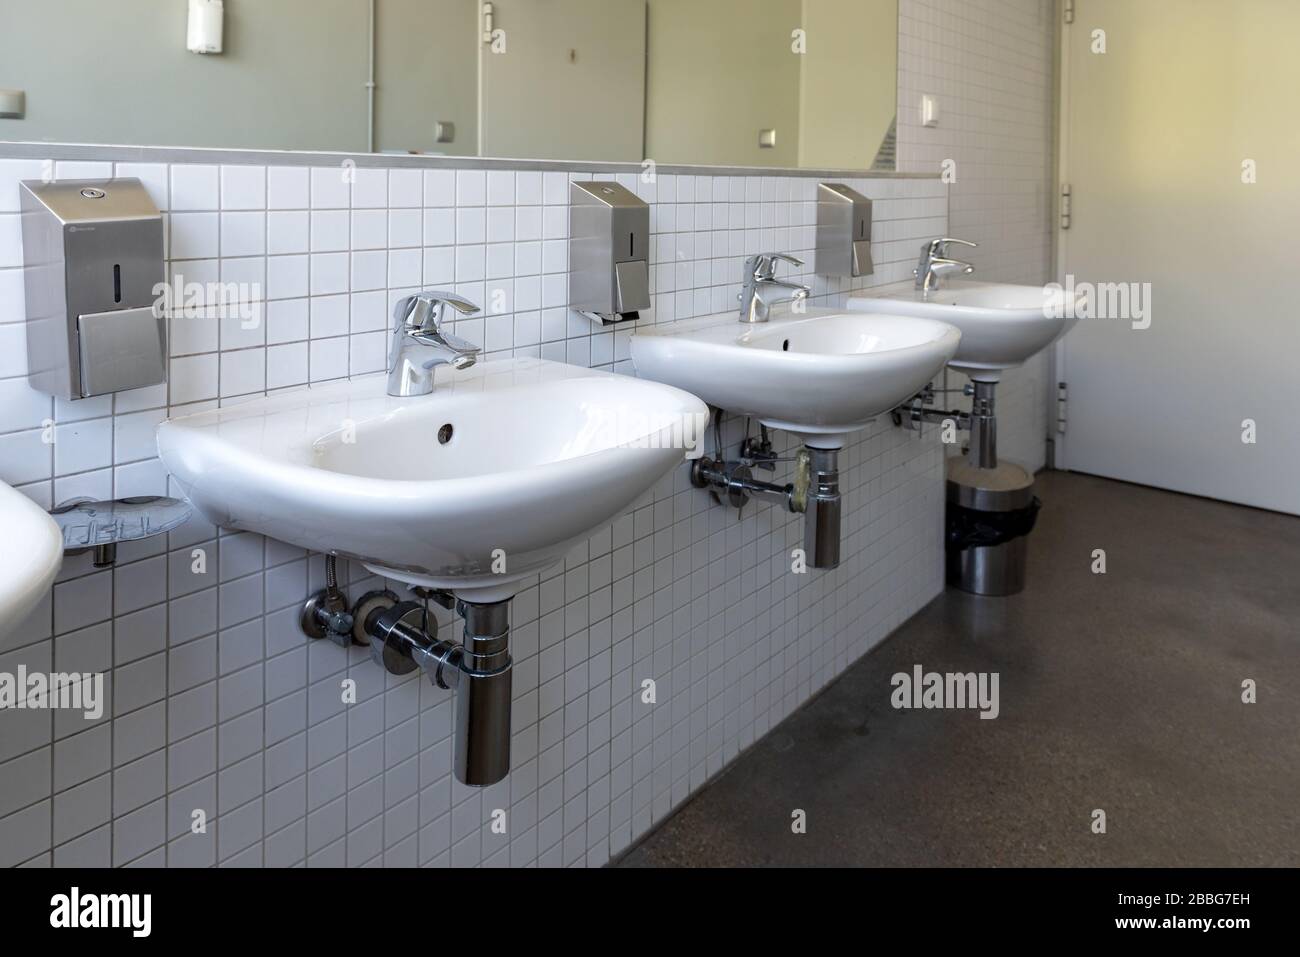 Rangée d'évier en porcelaine blanche dans les toilettes publiques. Concept de protection de l'intégrité antivirus Banque D'Images